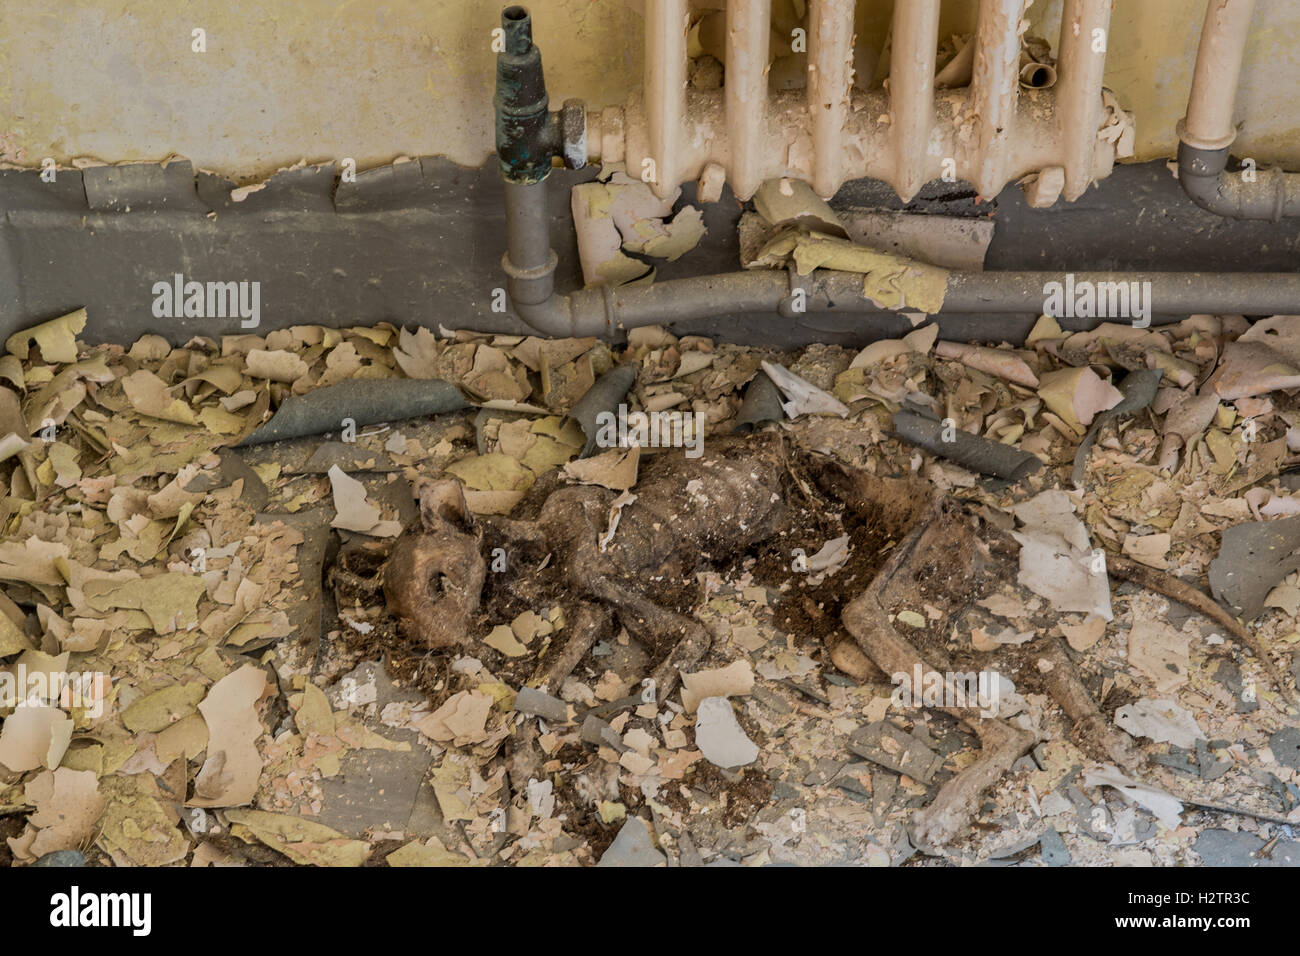 Les restes d'une momie de chat domestique une fois pris au piège à l'intérieur de l'hôpital Loi de jeune fille morgue, Lanchester, County Durham, Royaume-Uni Banque D'Images